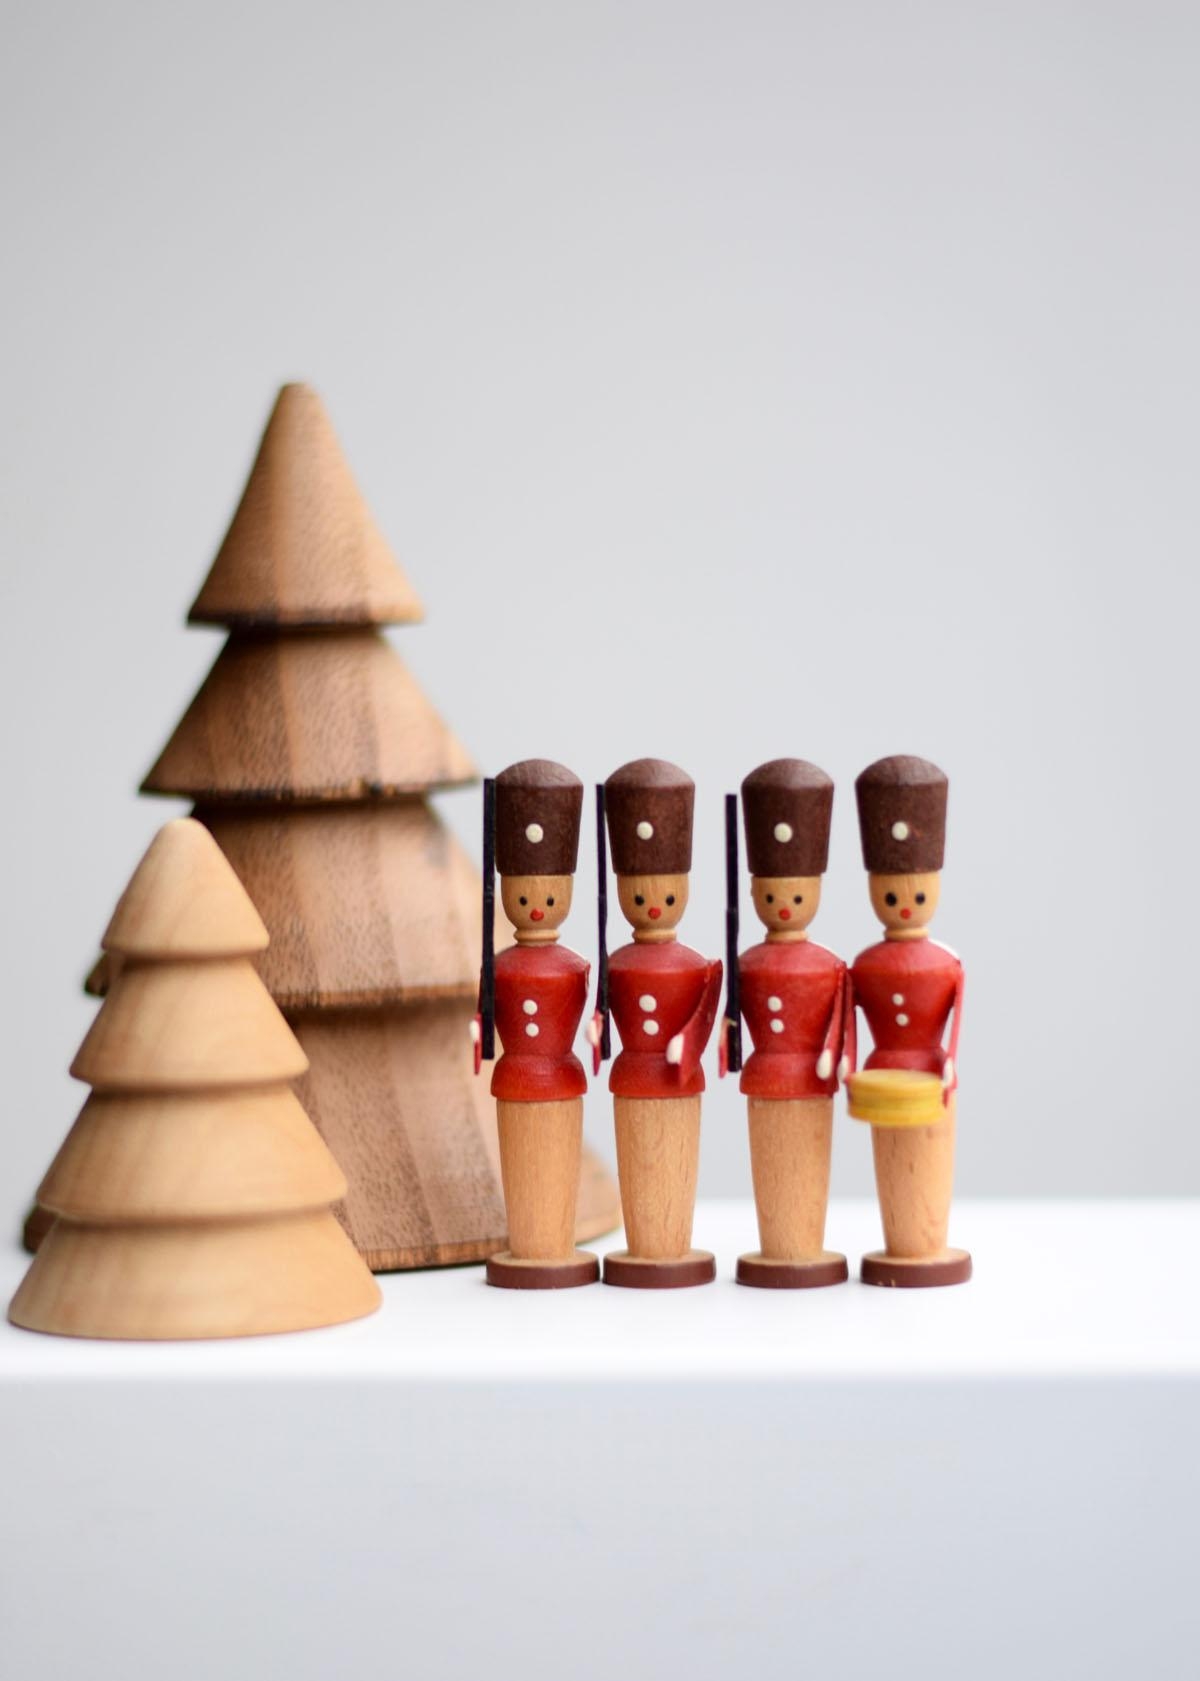 Die vintage DDR Holzsoldätchen stimmen langsam auf die Weihnachtssaison ein...
#weihnachtsdeko #vintage #holzspielzeug